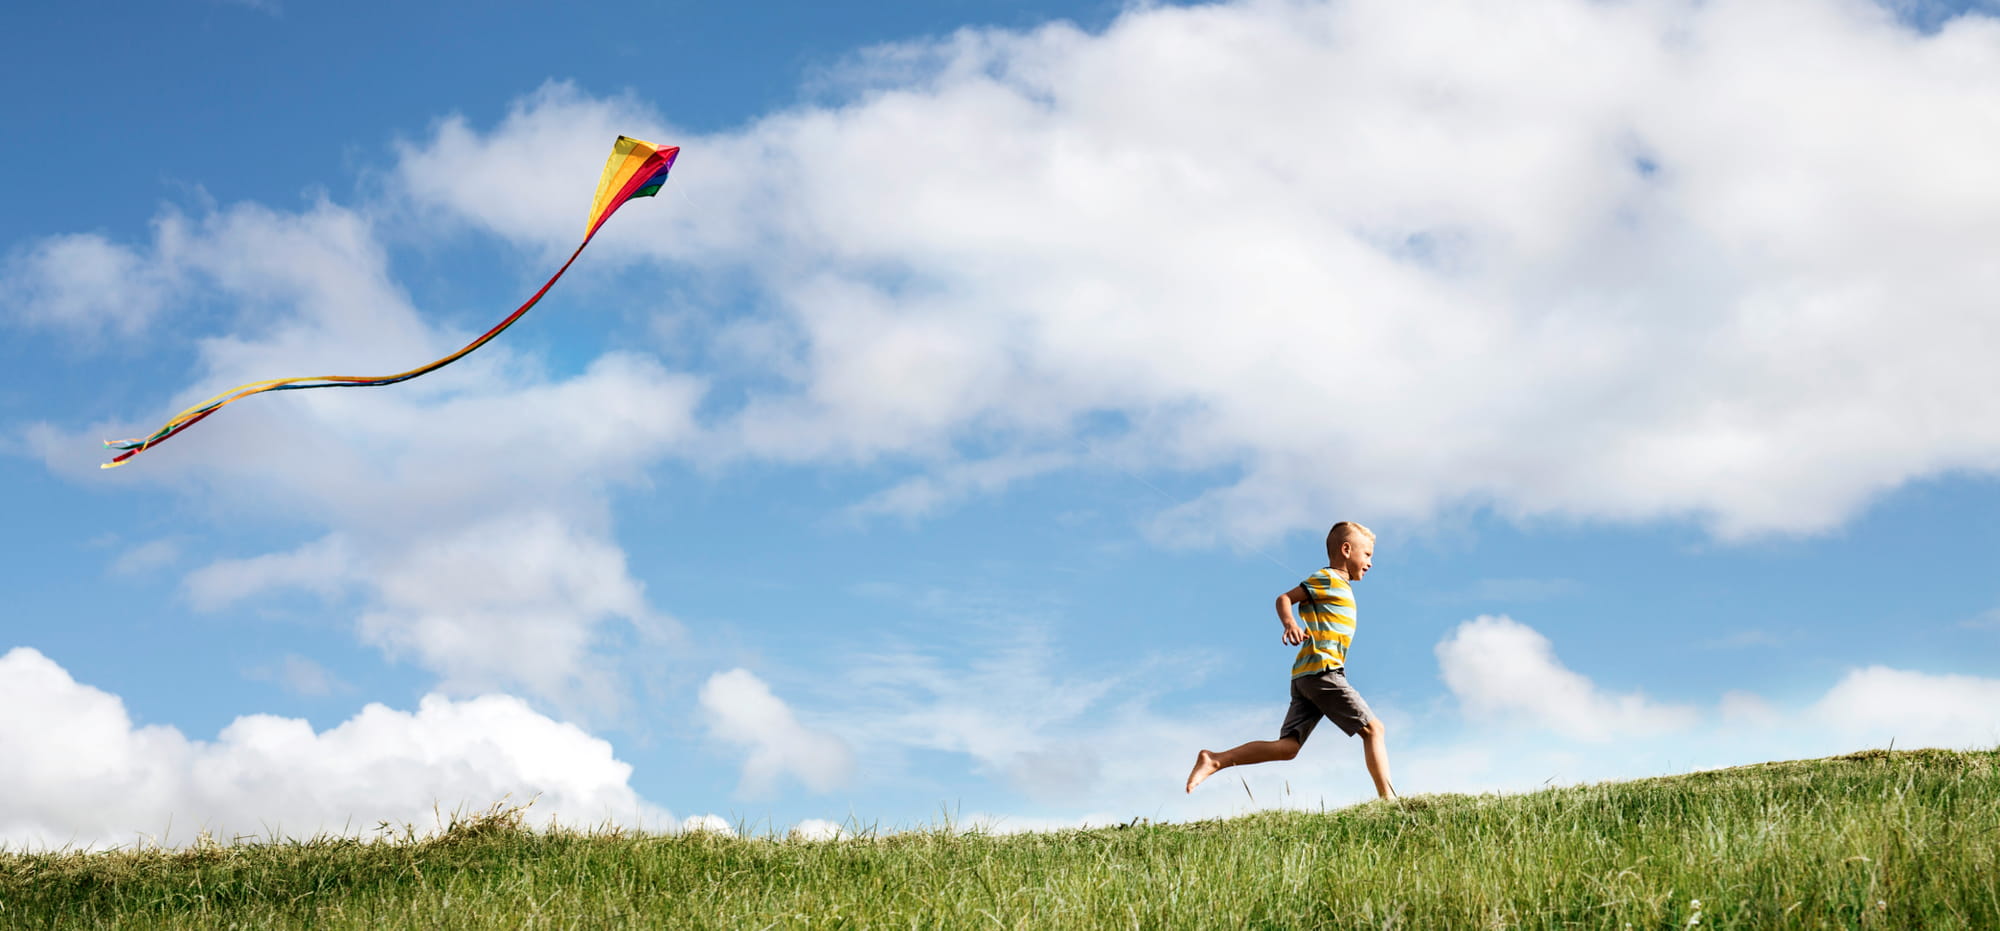 Kid running with kite